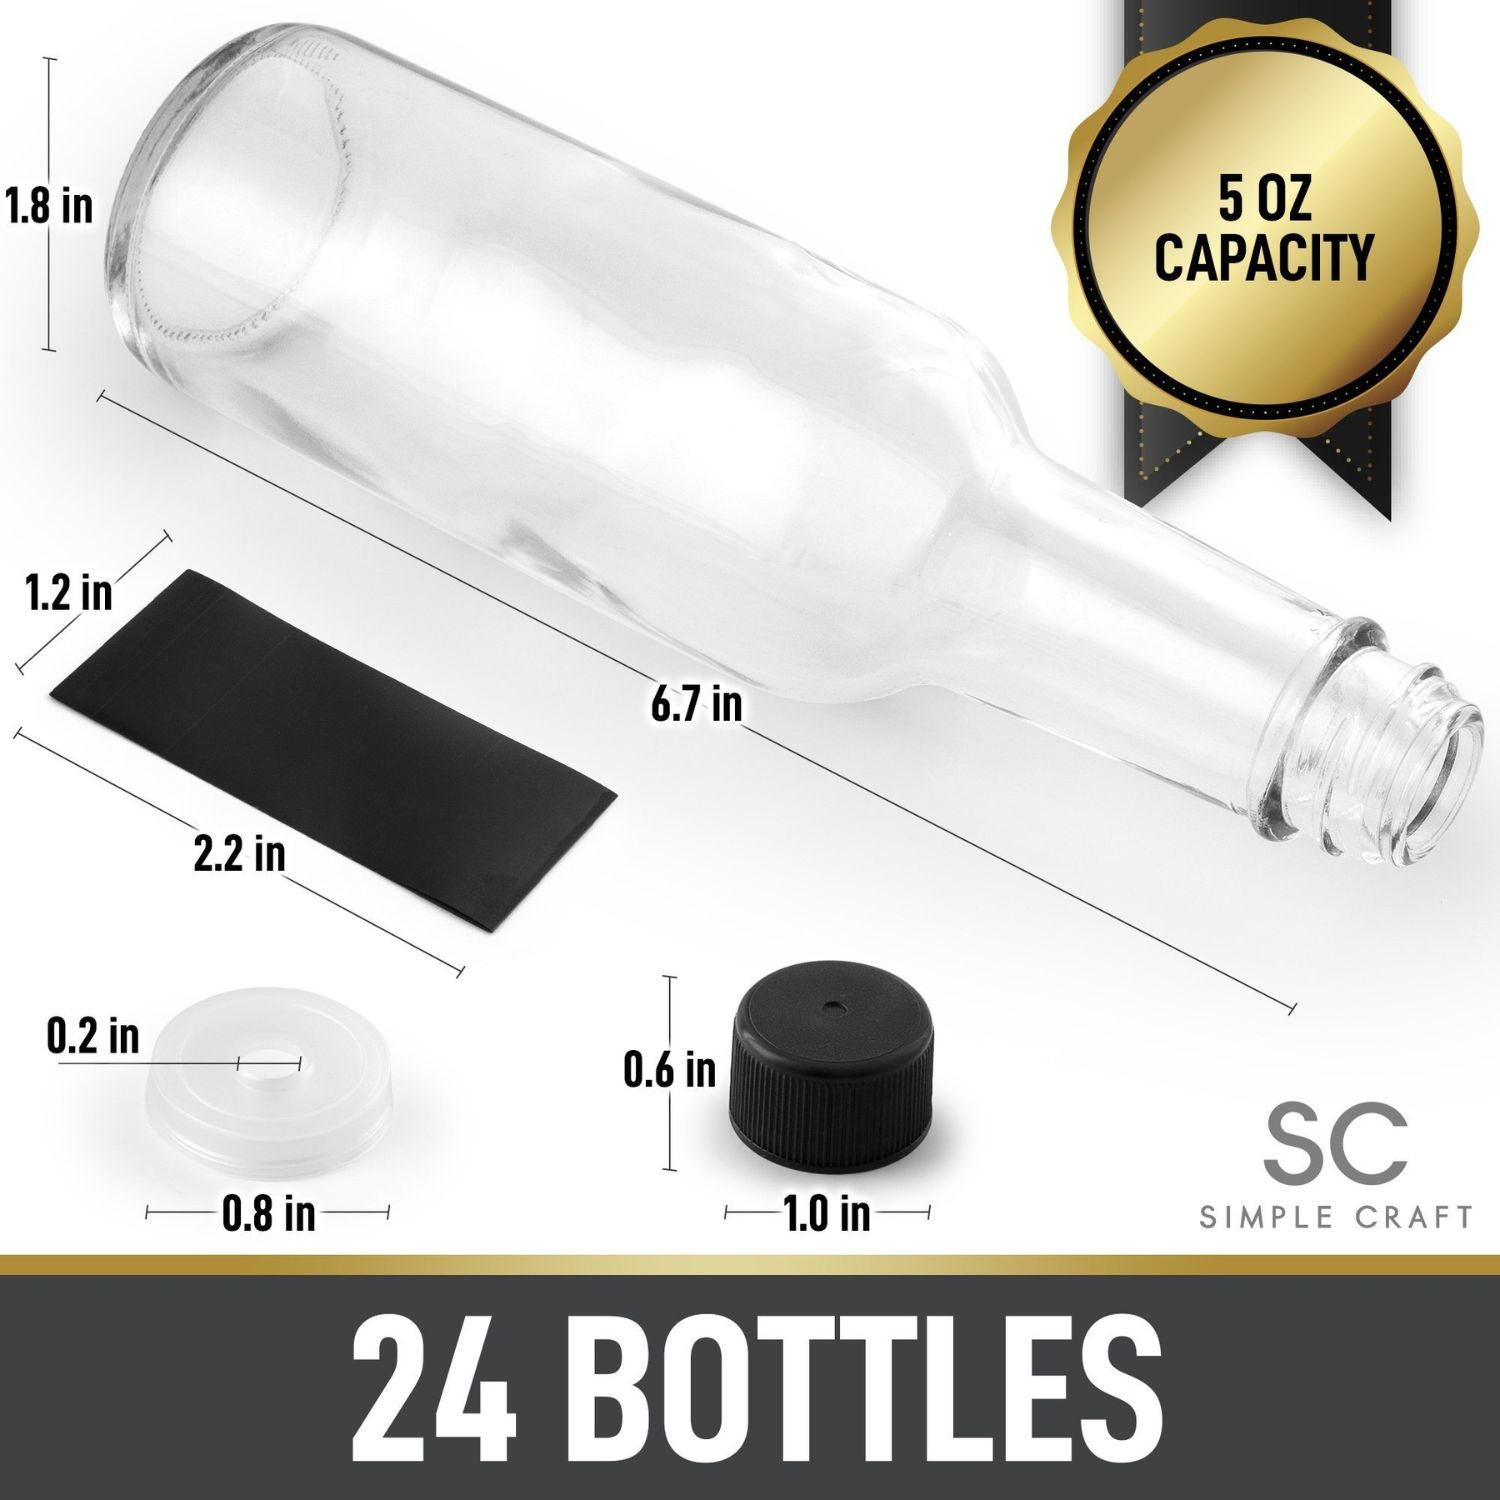 Simplecraft Hot Sauce Glass Bottles